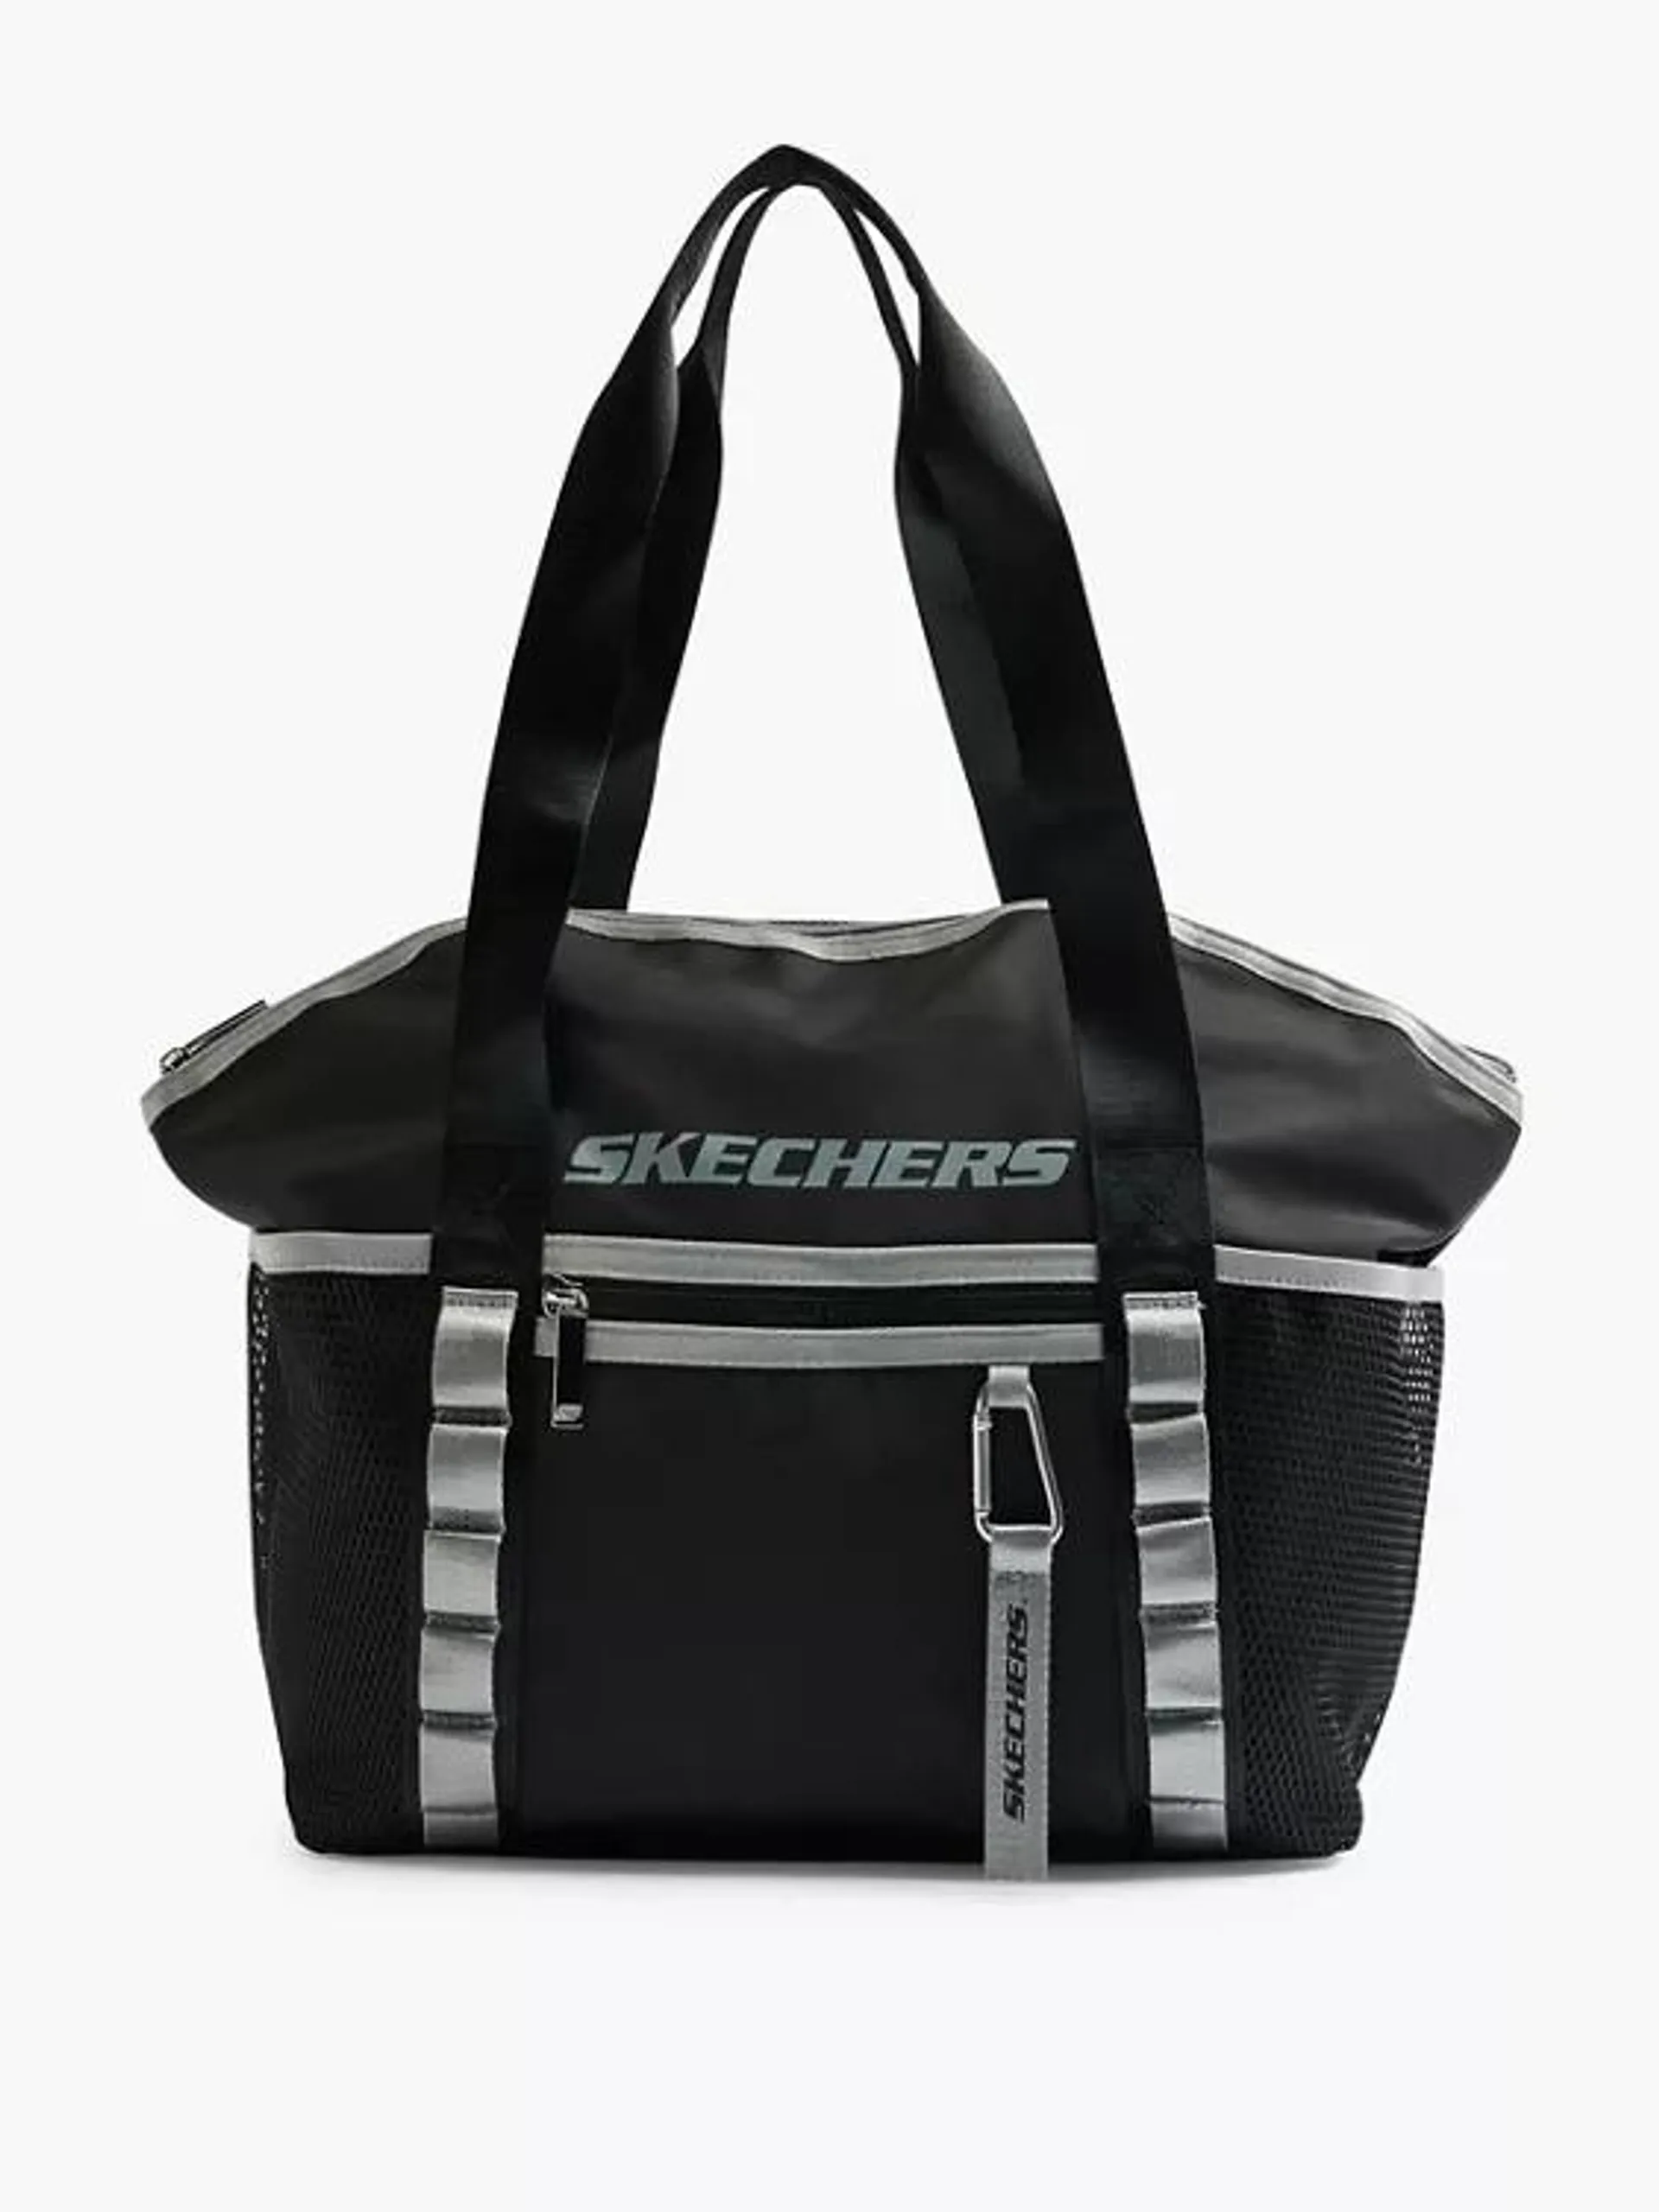 Skechers Black Shopper Bag